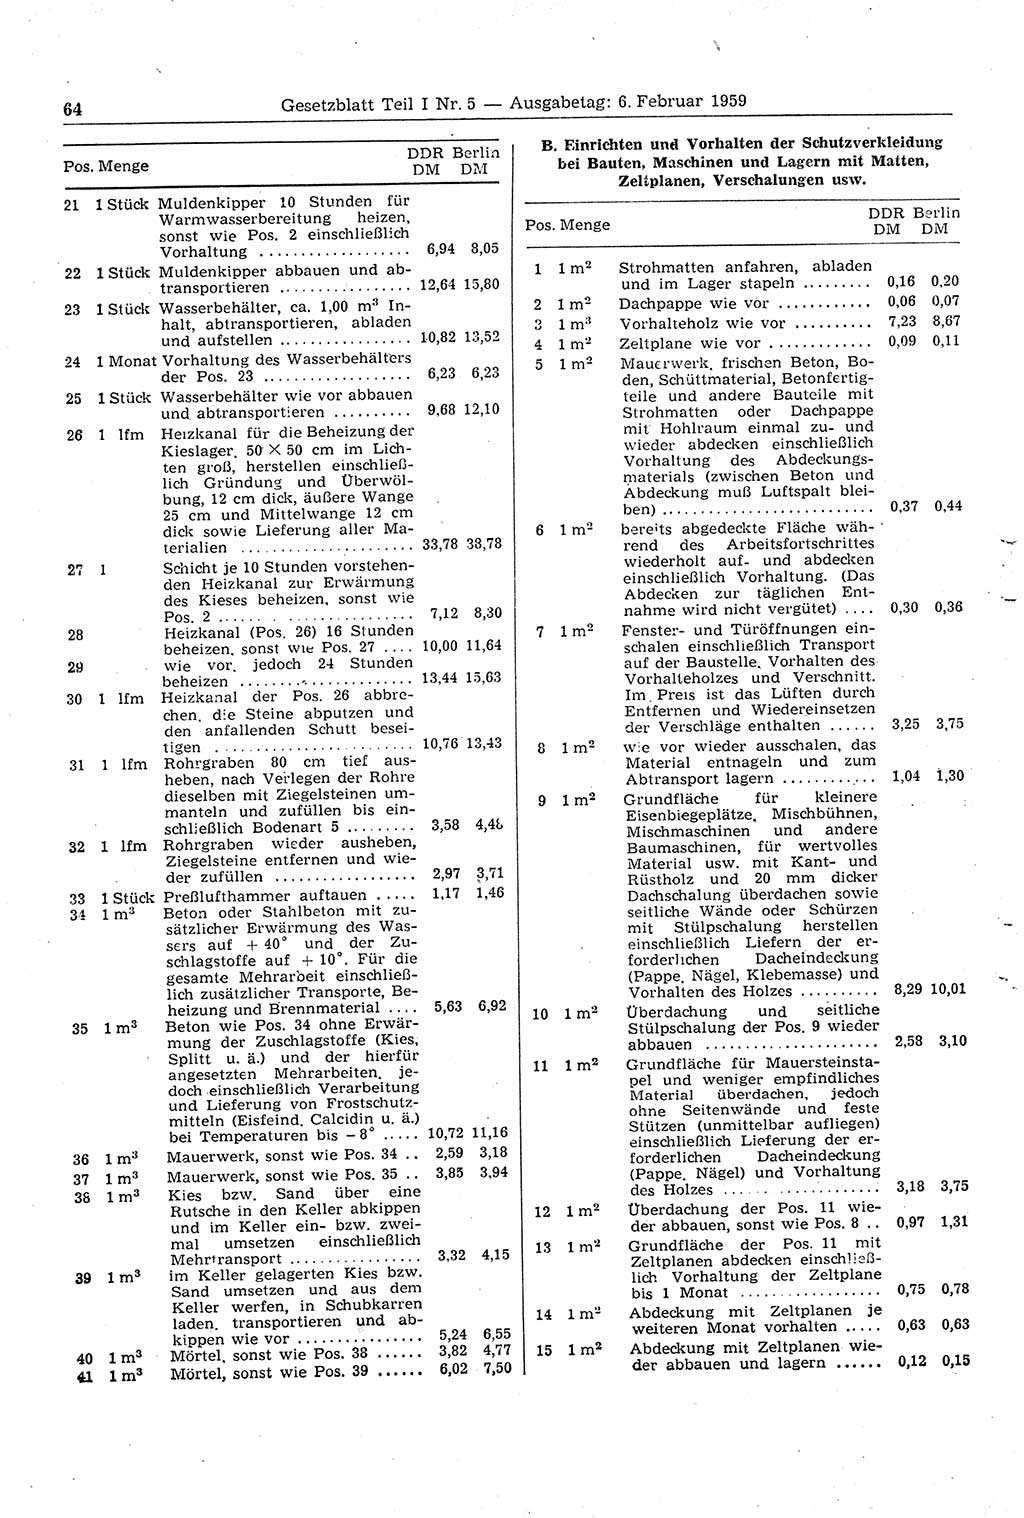 Gesetzblatt (GBl.) der Deutschen Demokratischen Republik (DDR) Teil Ⅰ 1959, Seite 64 (GBl. DDR Ⅰ 1959, S. 64)